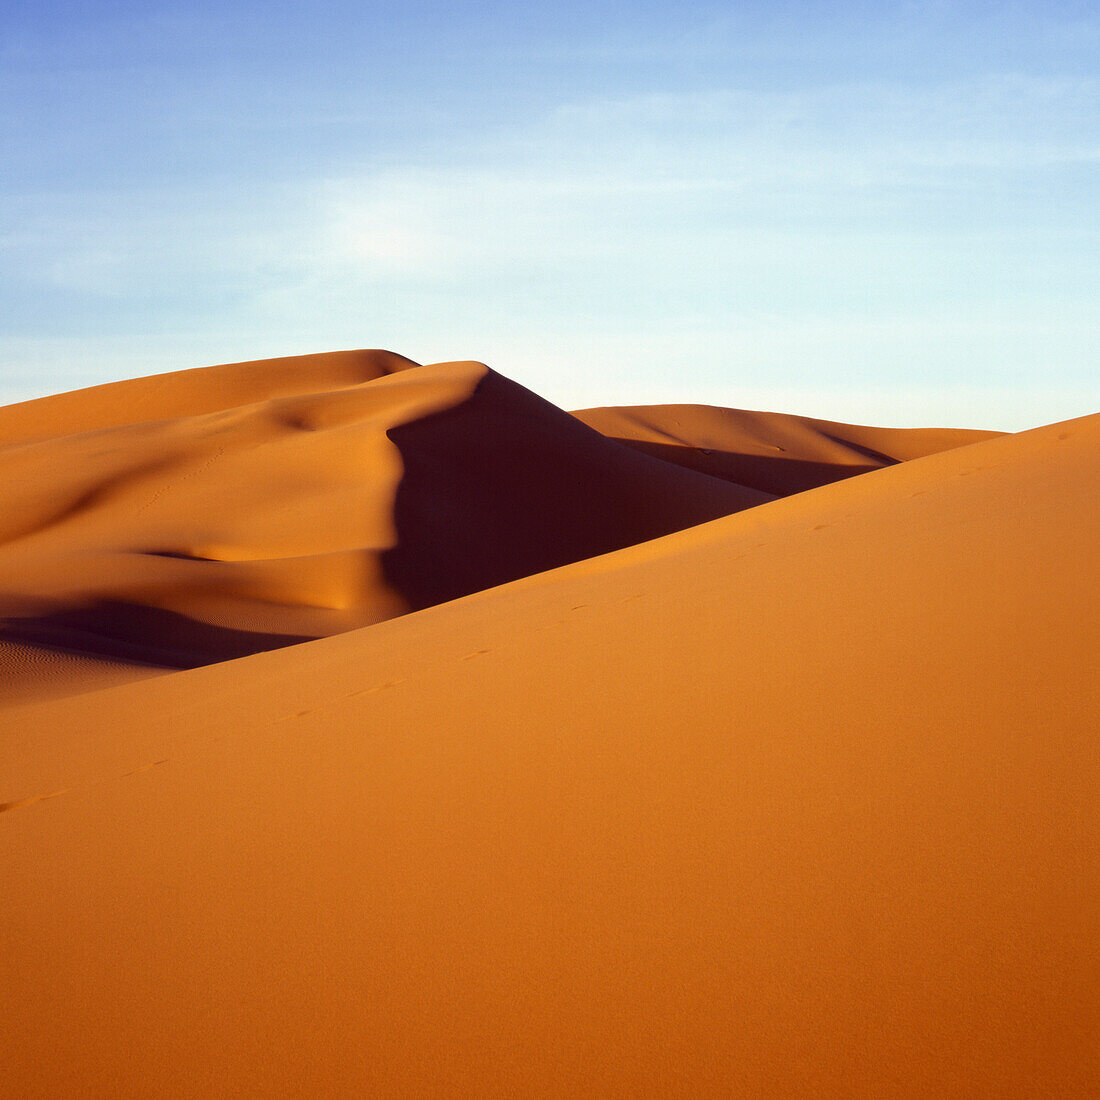 Sahara desert landscape, Morocco